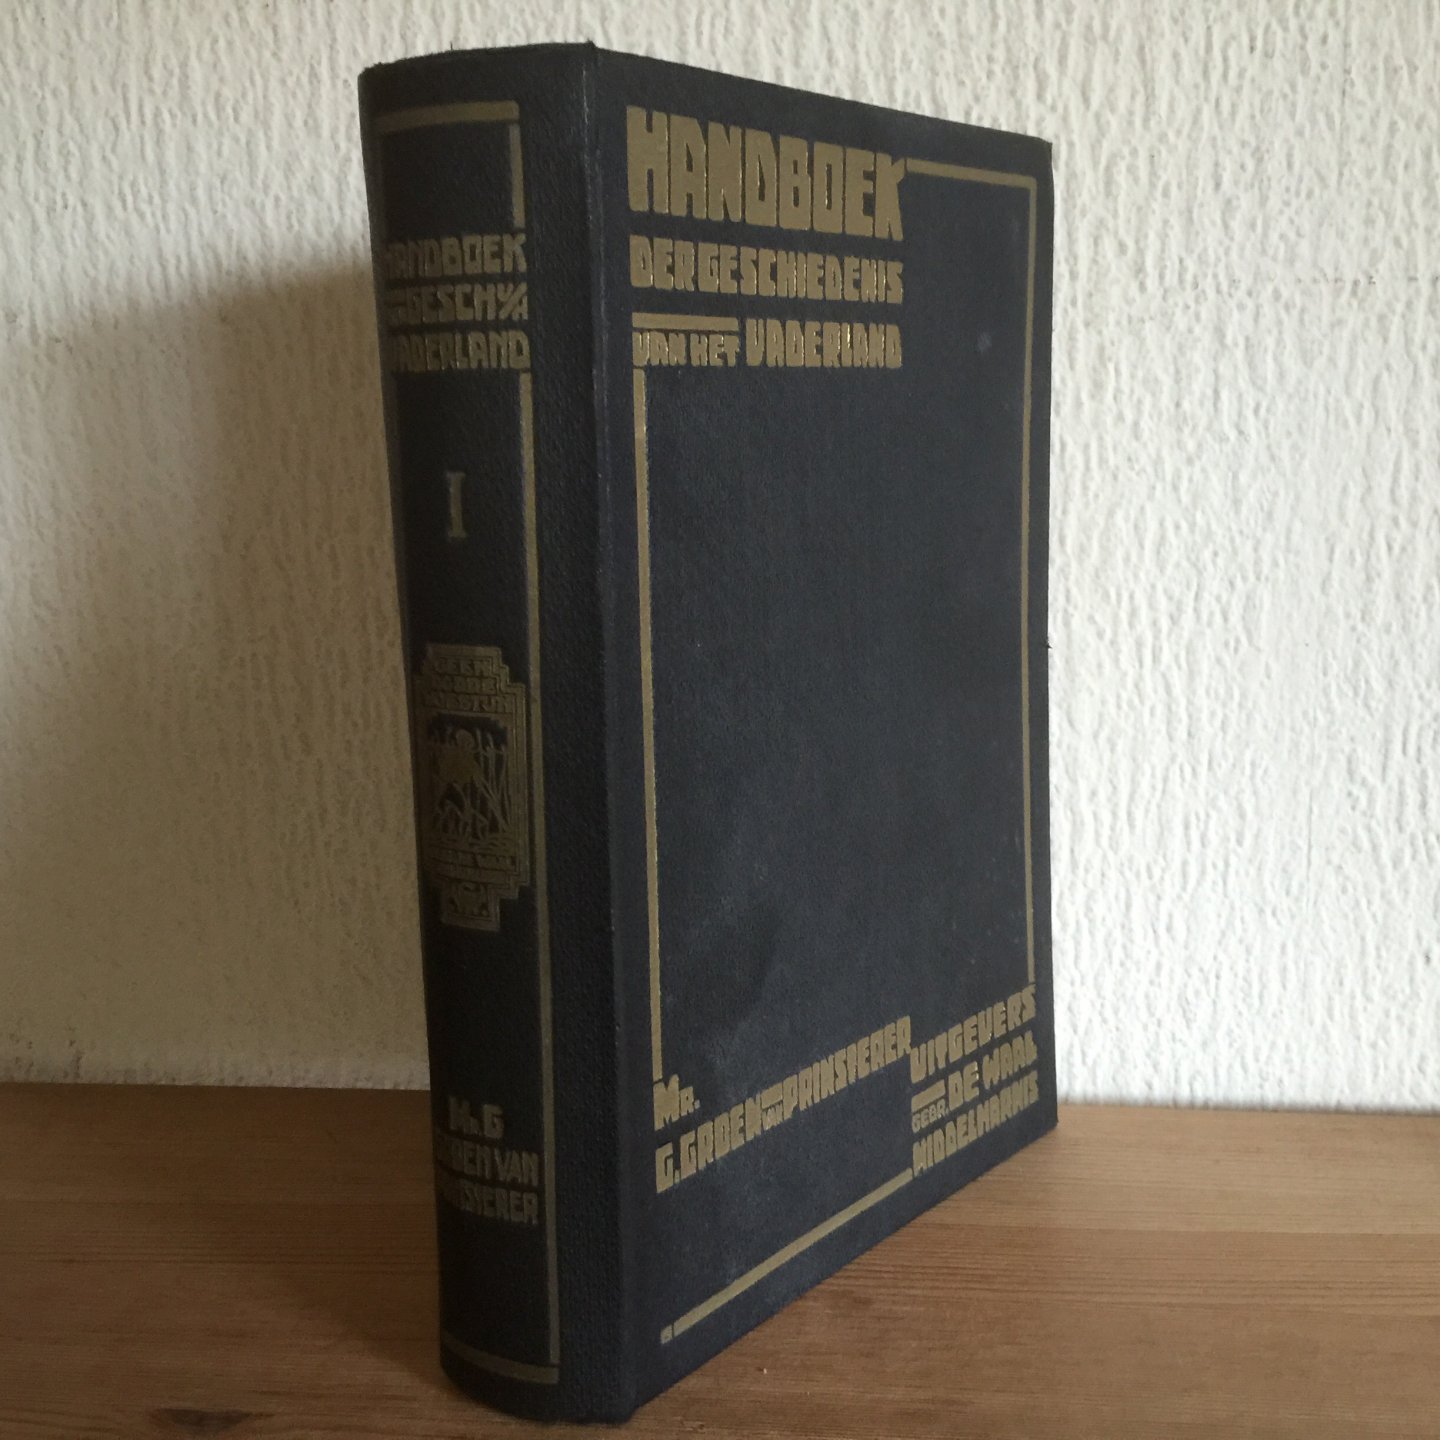 Mr. Groen van Prinsteren - Handboek der geschiedenis van het VADERLAND